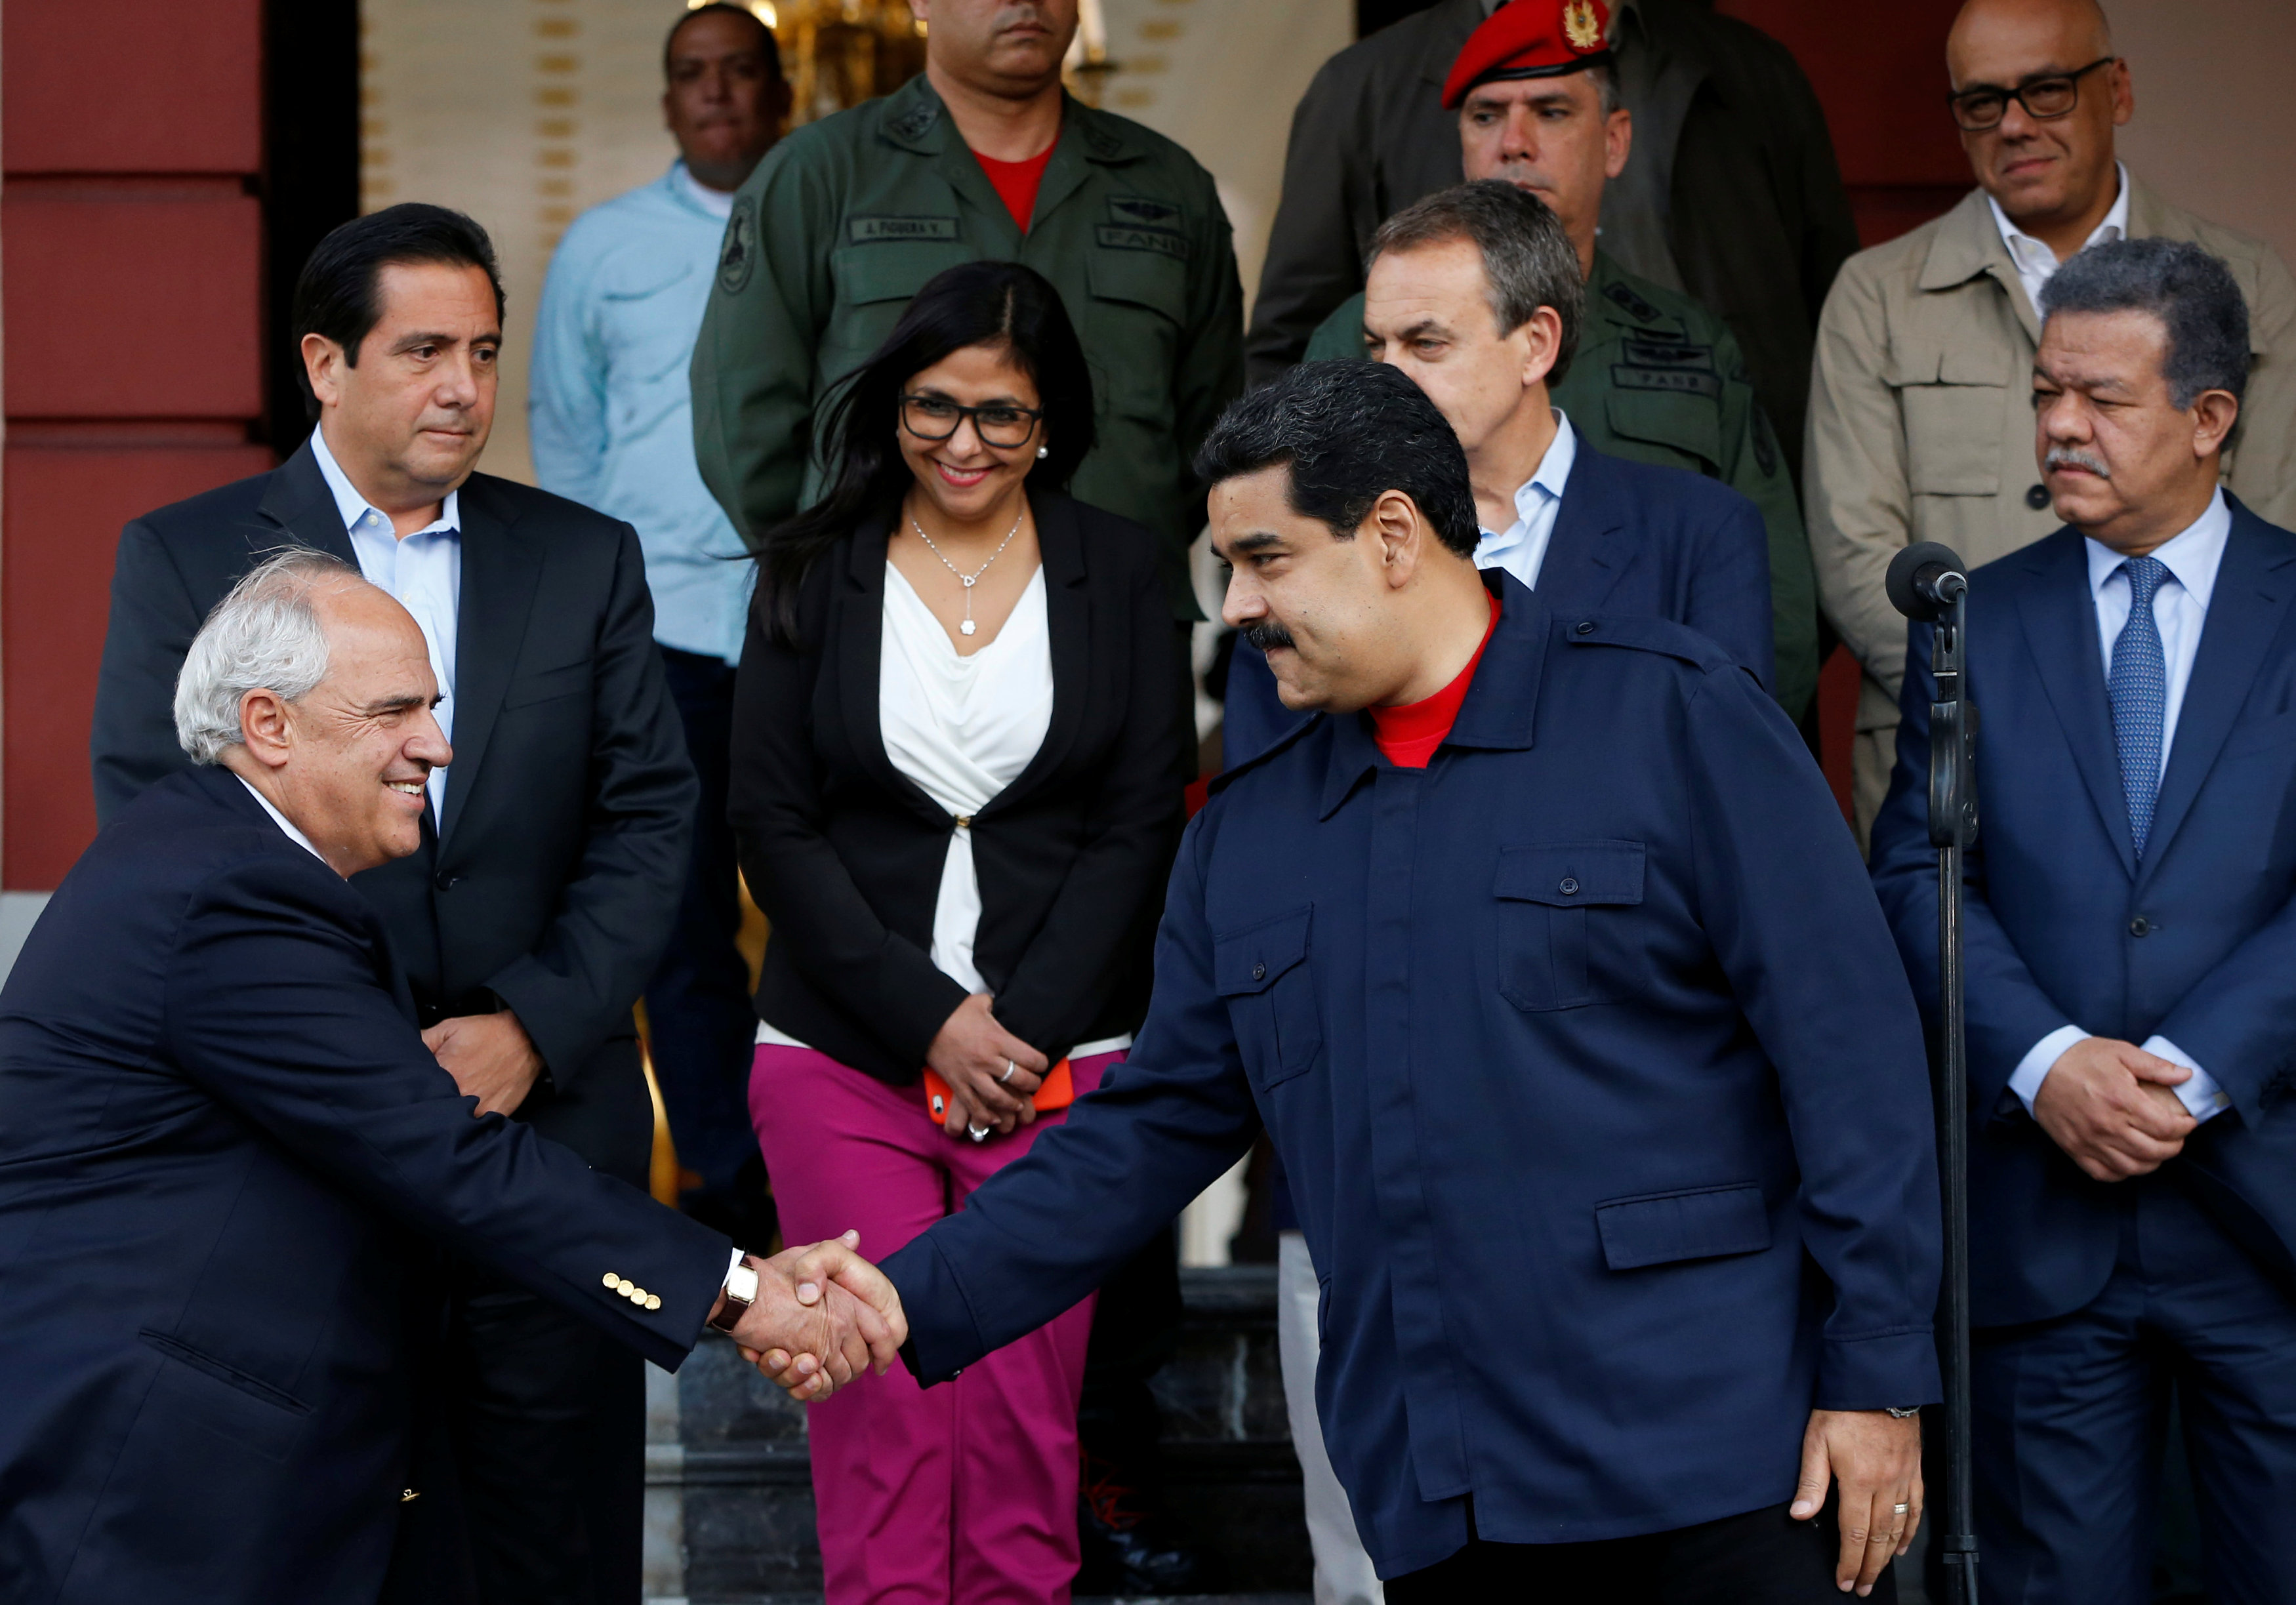 La “iluminada” de Samper a Maduro pretendiendo oscurecer a la oposición (VIDEO)